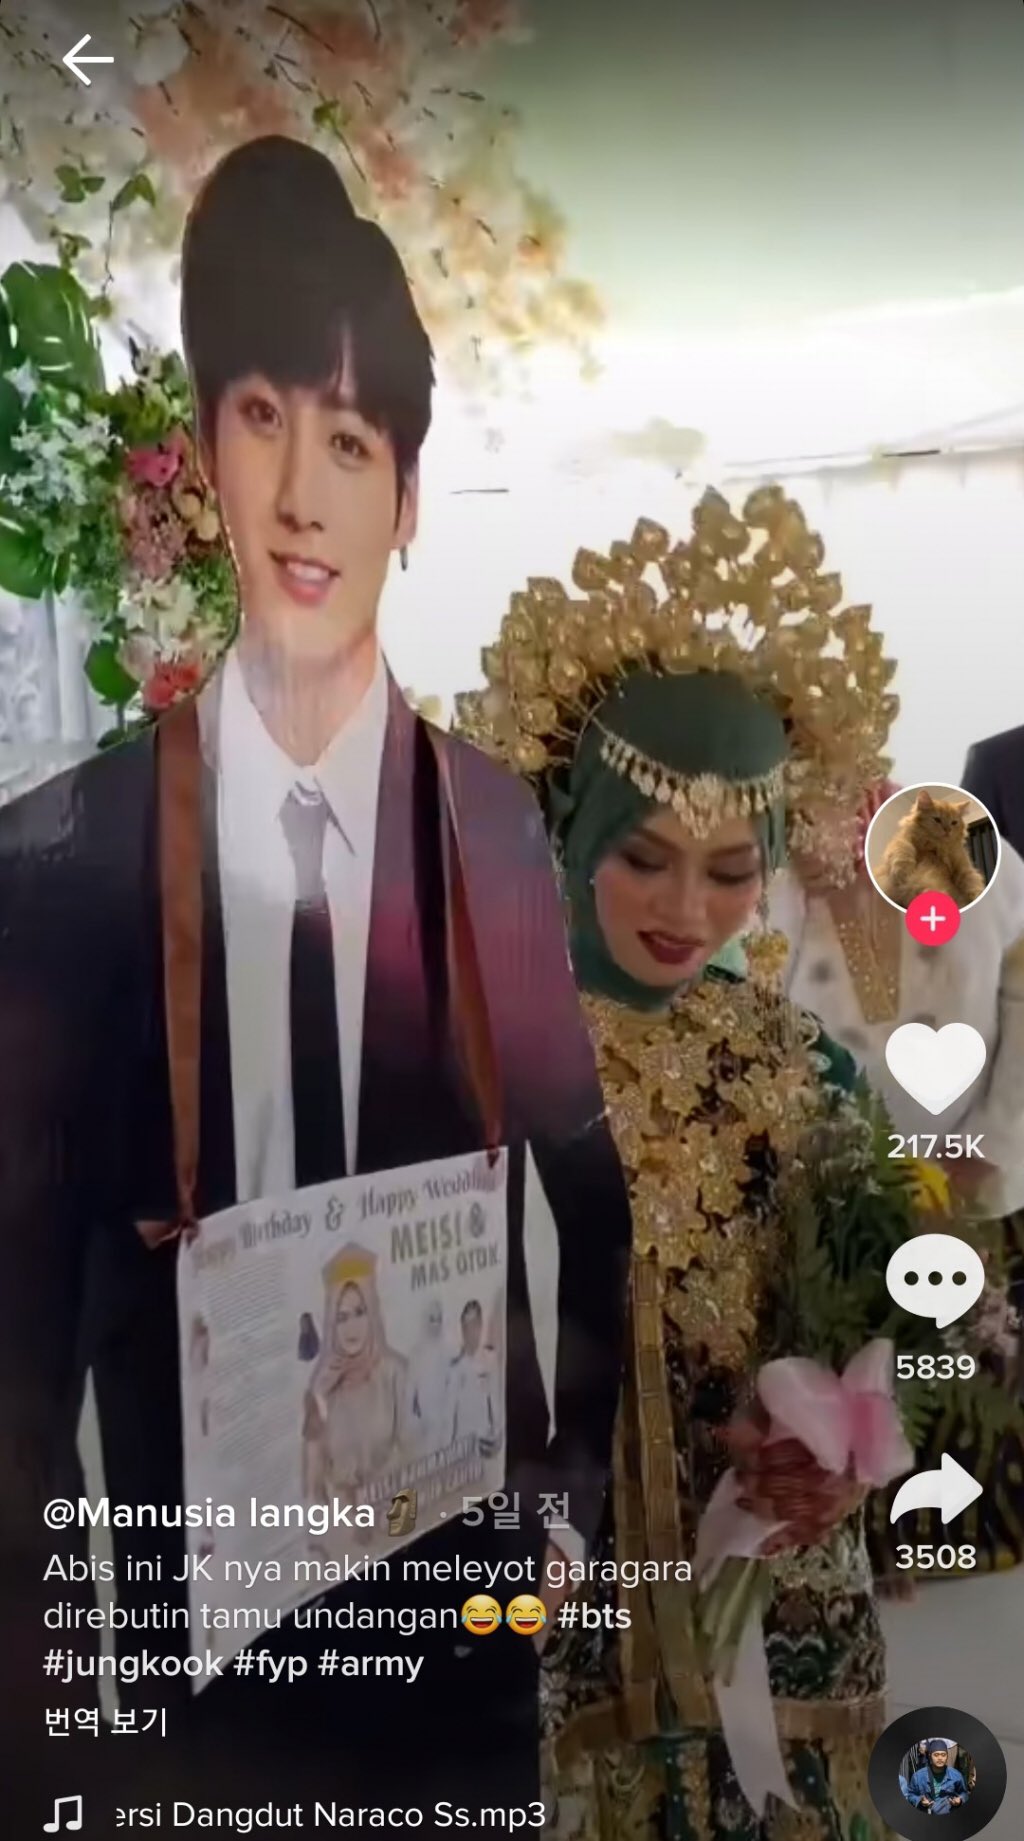 Jungkook de BTS sorprende a los internautas al ‘aparecer’ en una boda en Indonesia